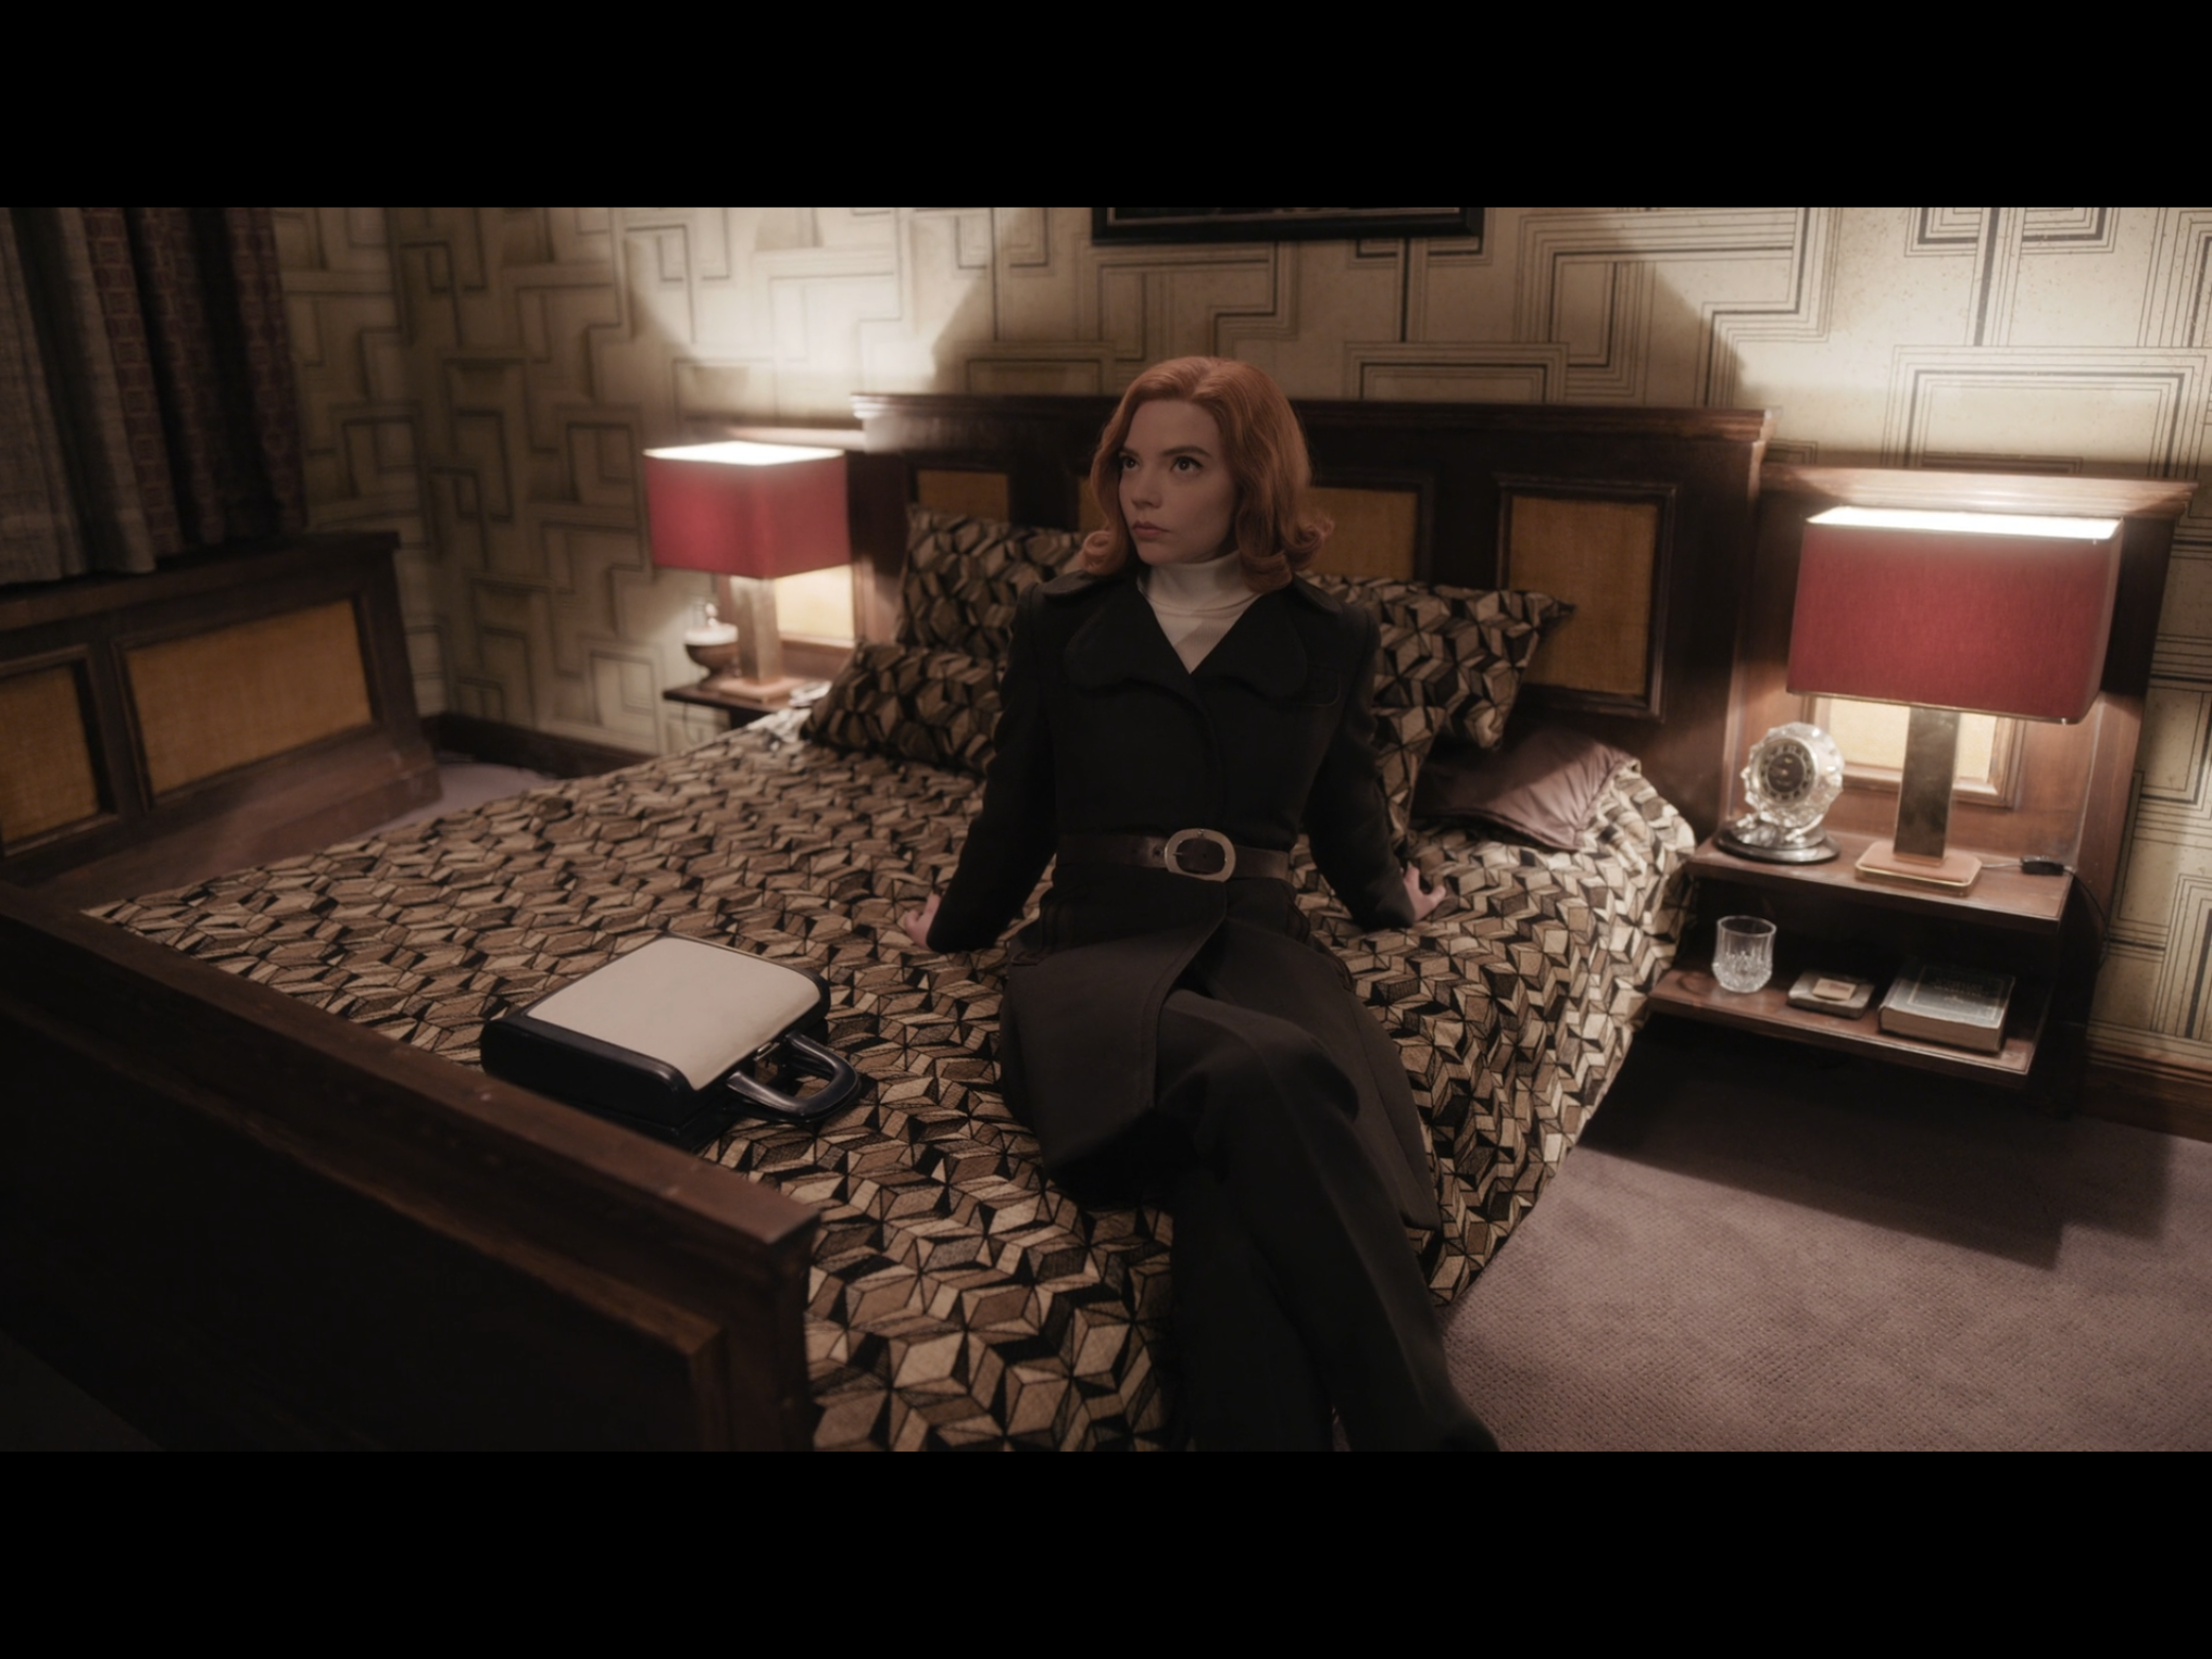 People 2224x1668 The Queen's Gambit Anya Taylor-Joy  women actress sitting in bed TV series